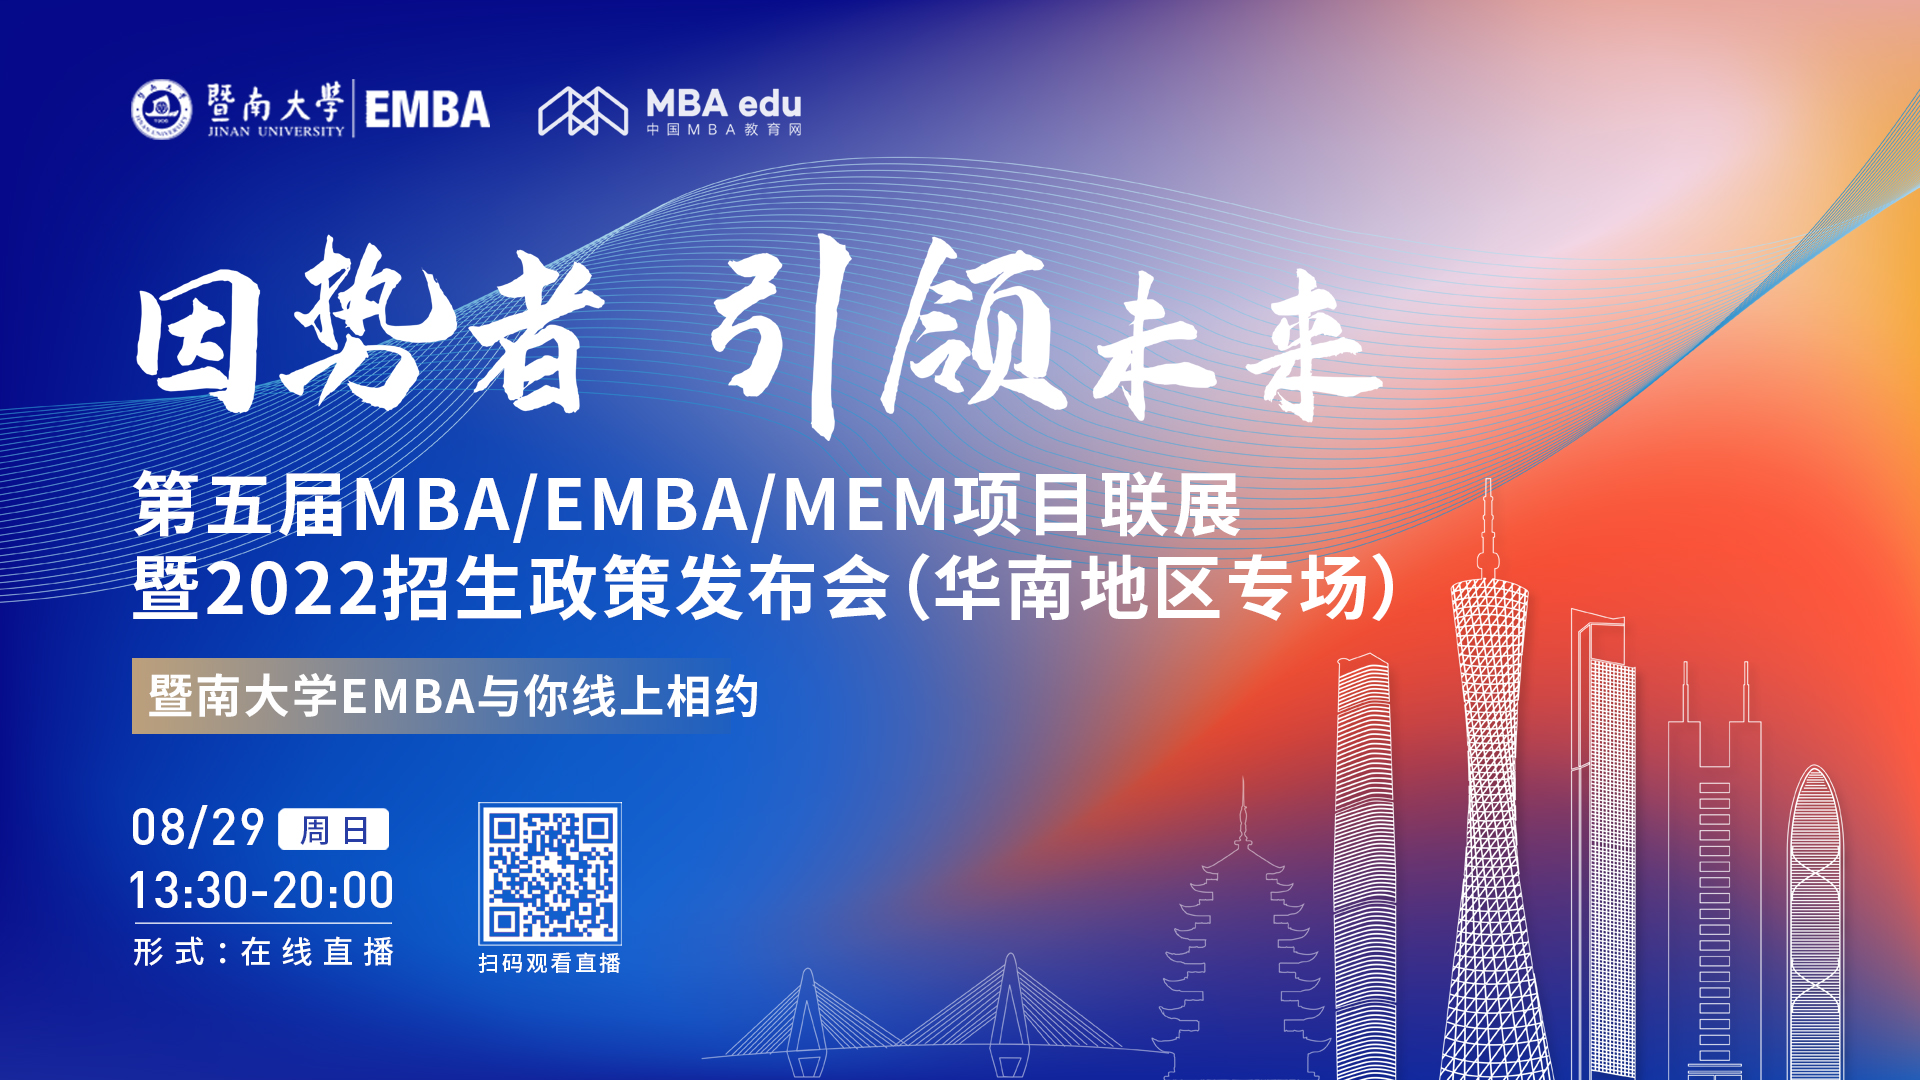 【8.29】暨南大学EMBA邀您在线收看第五届MBA/EMBA/MEM项目联展暨2022招生政策发布会（华南地区专场）